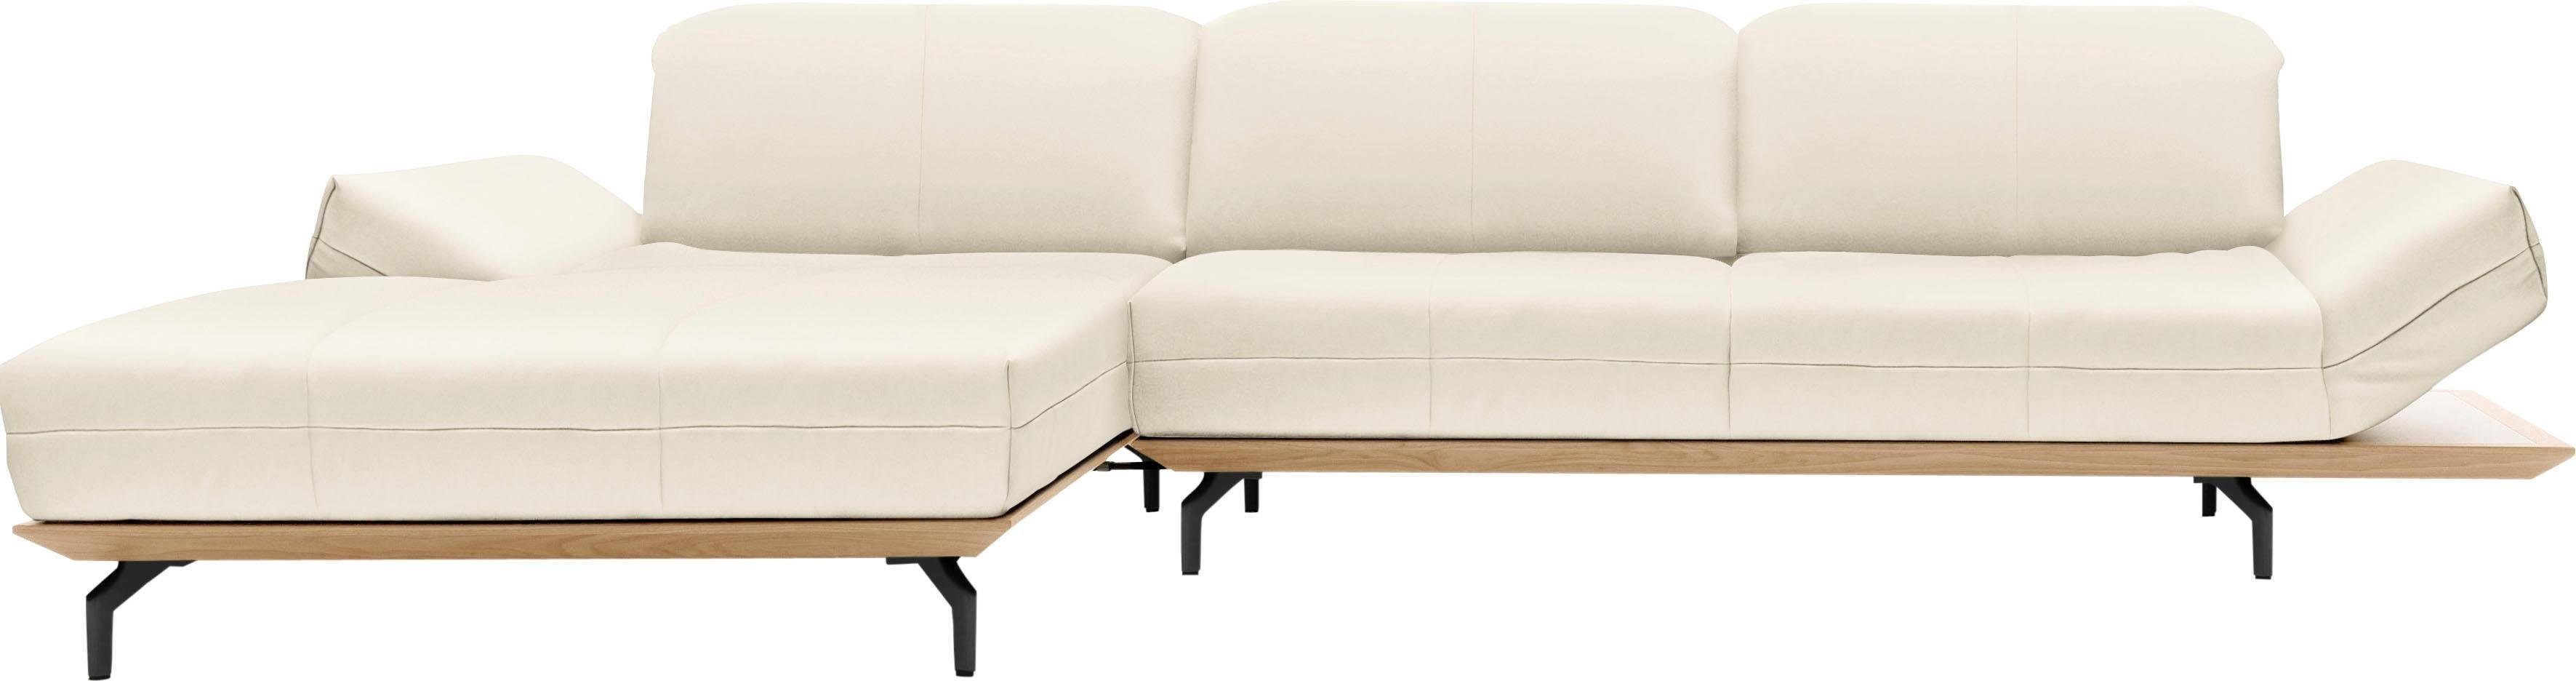 hülsta sofa Ecksofa hs.420, in 2 Qualitäten, Holzrahmen in Eiche Natur oder Nußbaum, Breite 293 cm